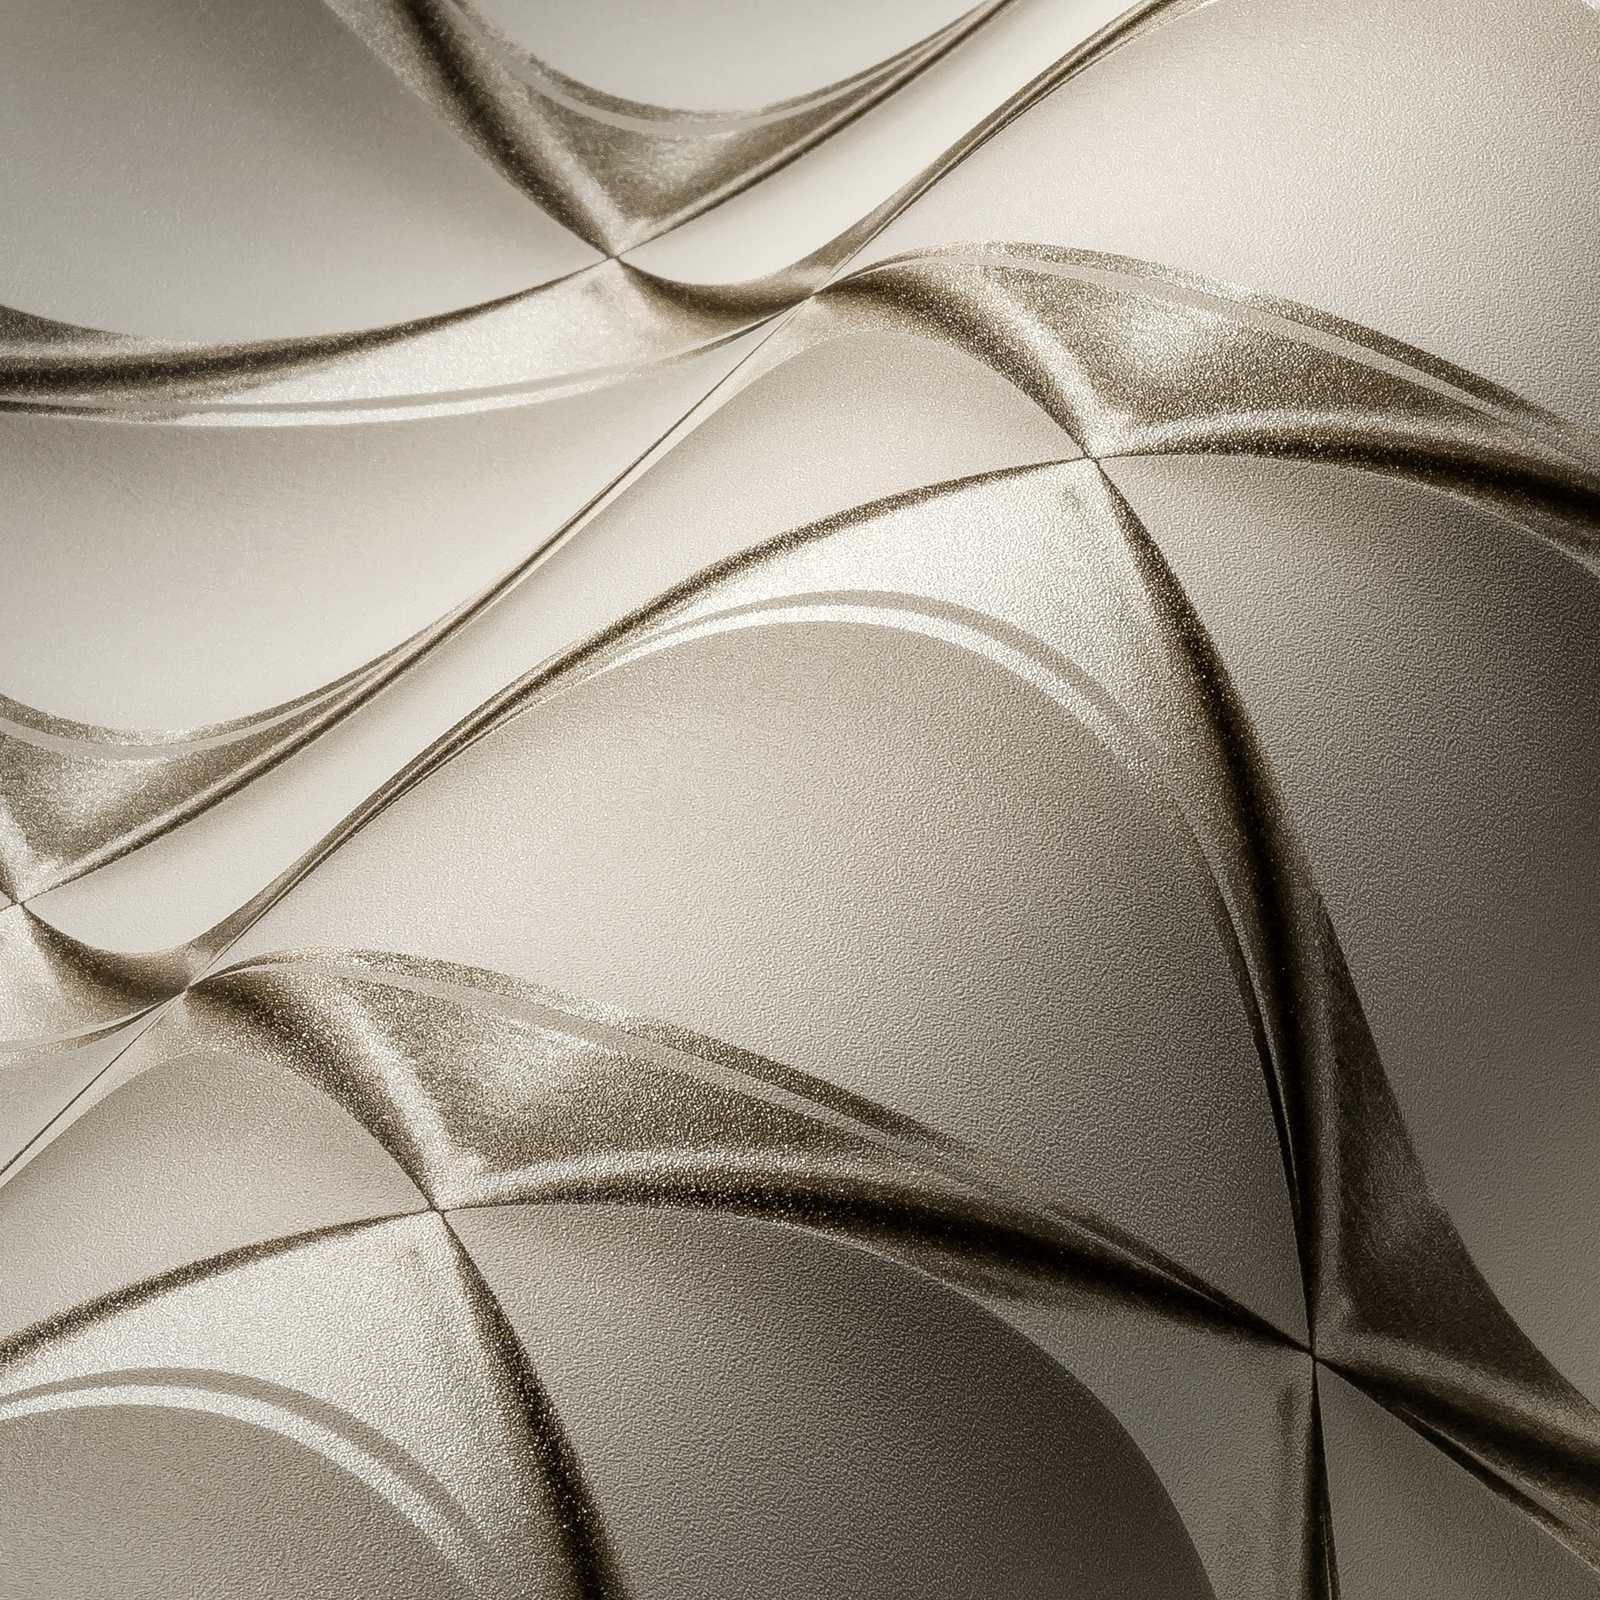             3D Tapete Silber-Weiß mit Retro Design – Grau, Metallic, Beige
        